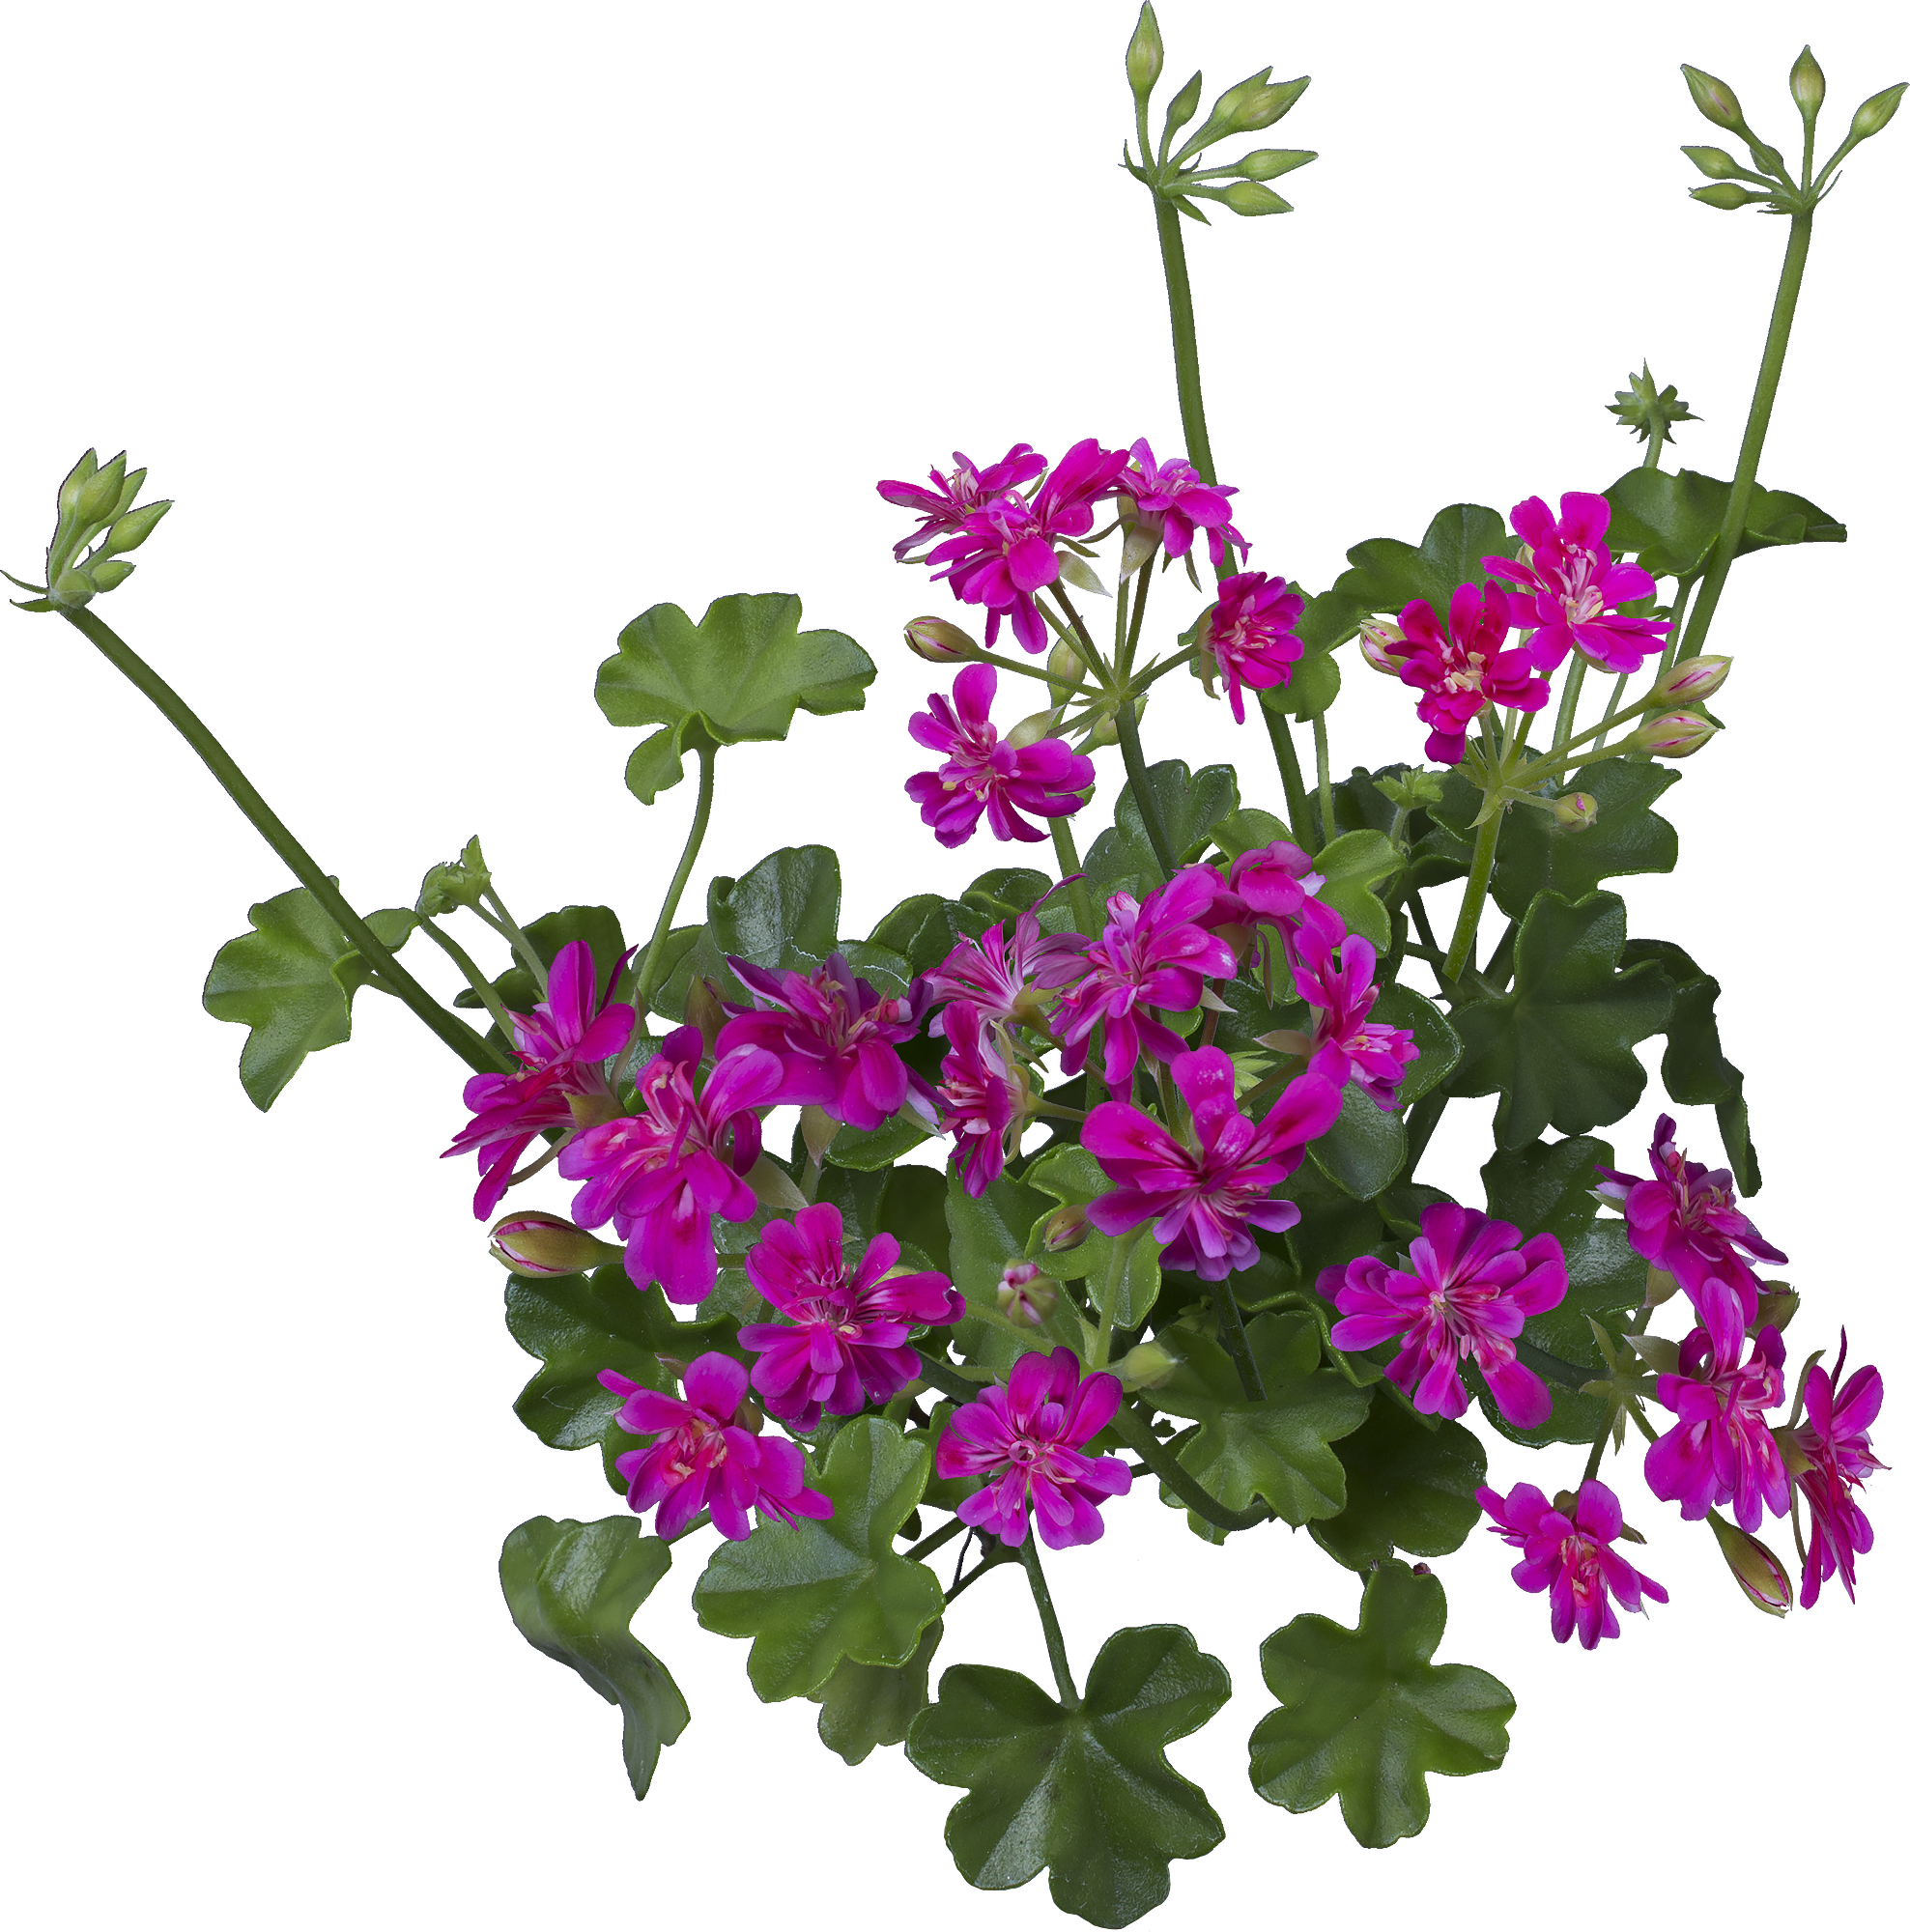 アイビーゼラニウム シュガーベイビーの花の切り抜き画像 006 Flowers Plants Eden